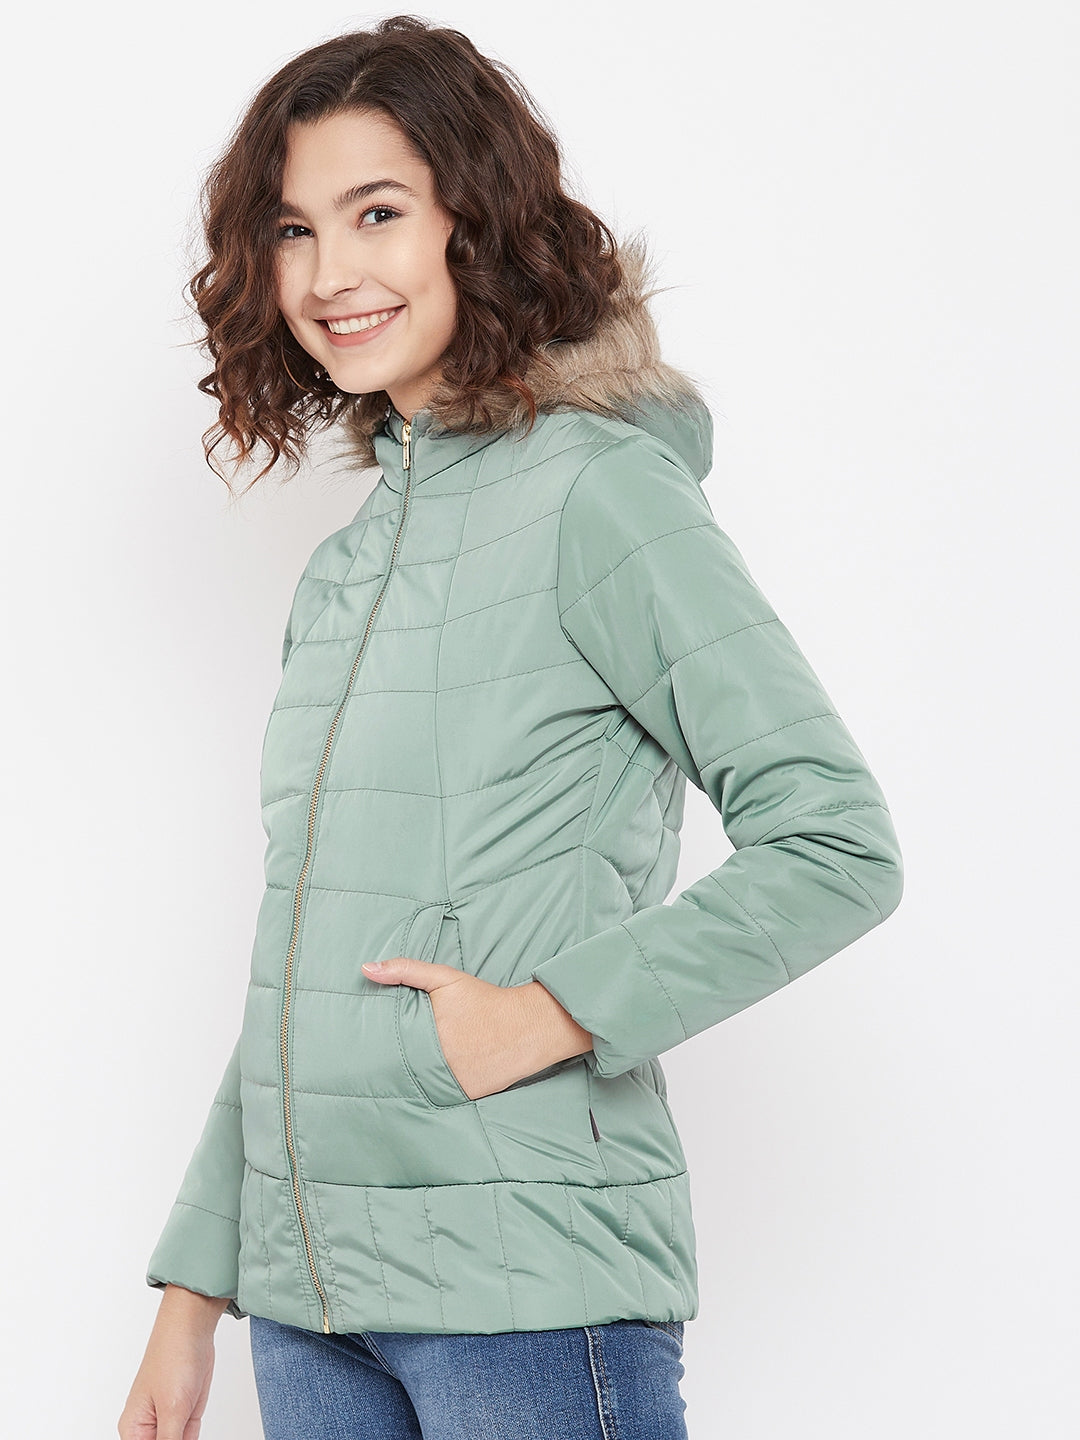 Mint Green Hooded Jacket - Women Jackets